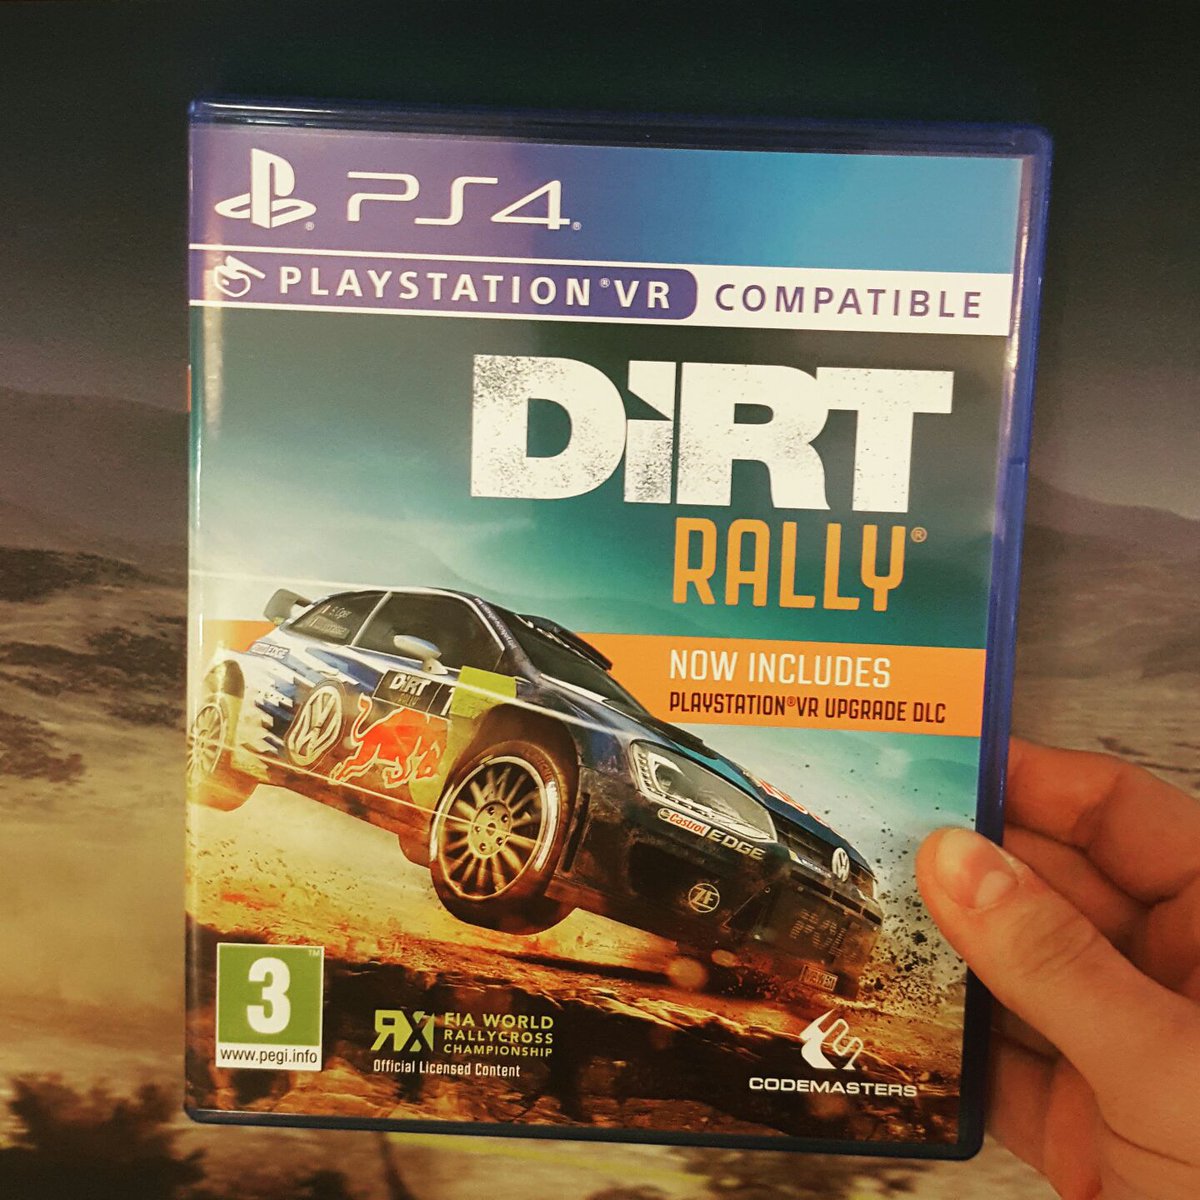 Dirt vr. Ps4 Rally. Dirt 4 (ps4). Dirt Rally ps4. Dirt Rally PS 5.